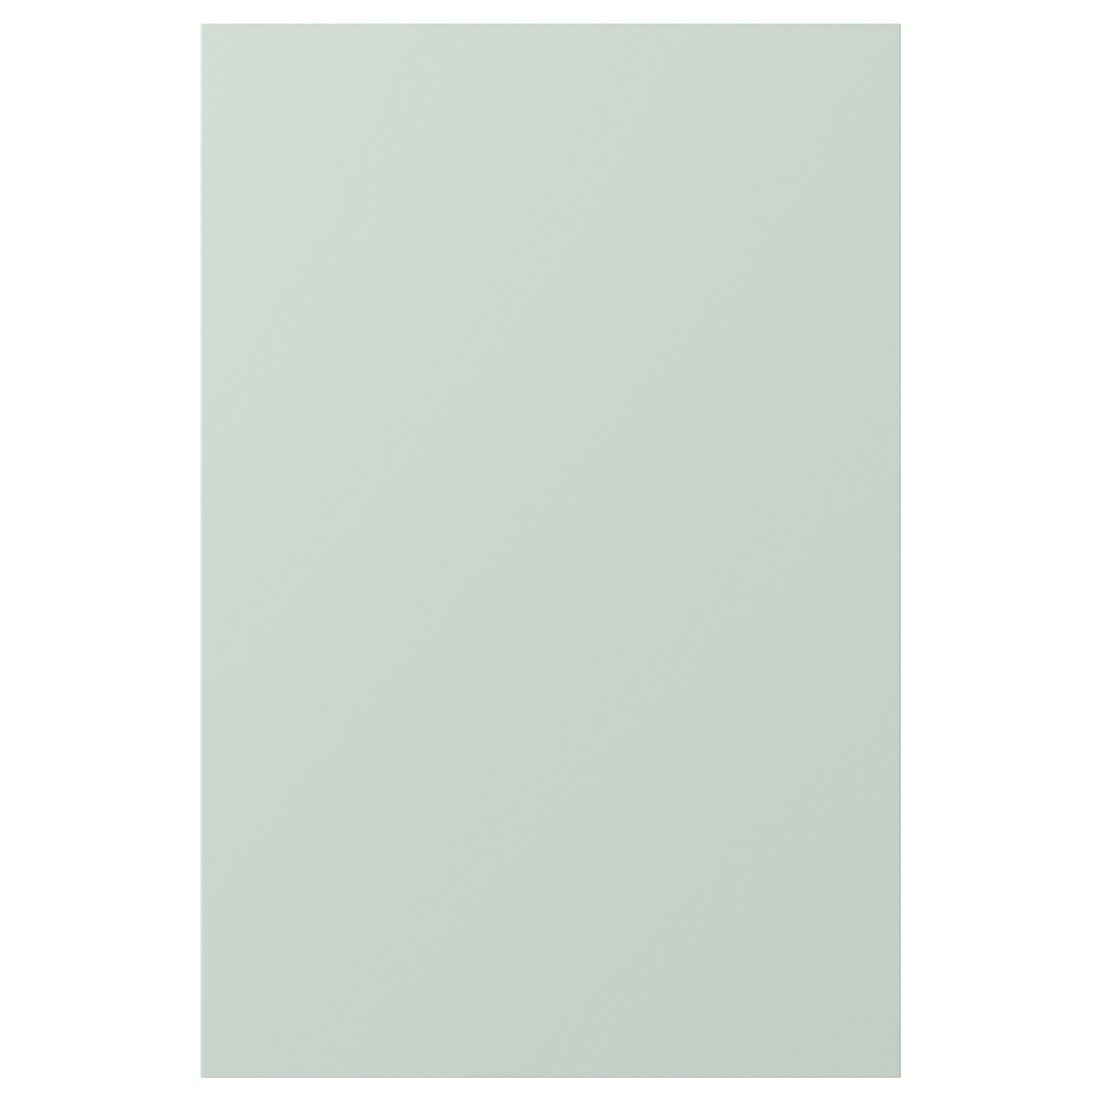 IKEA ENHET ЕНХЕТ Двері, блідо-сіро-зелений, 40x60 см 40539526 405.395.26